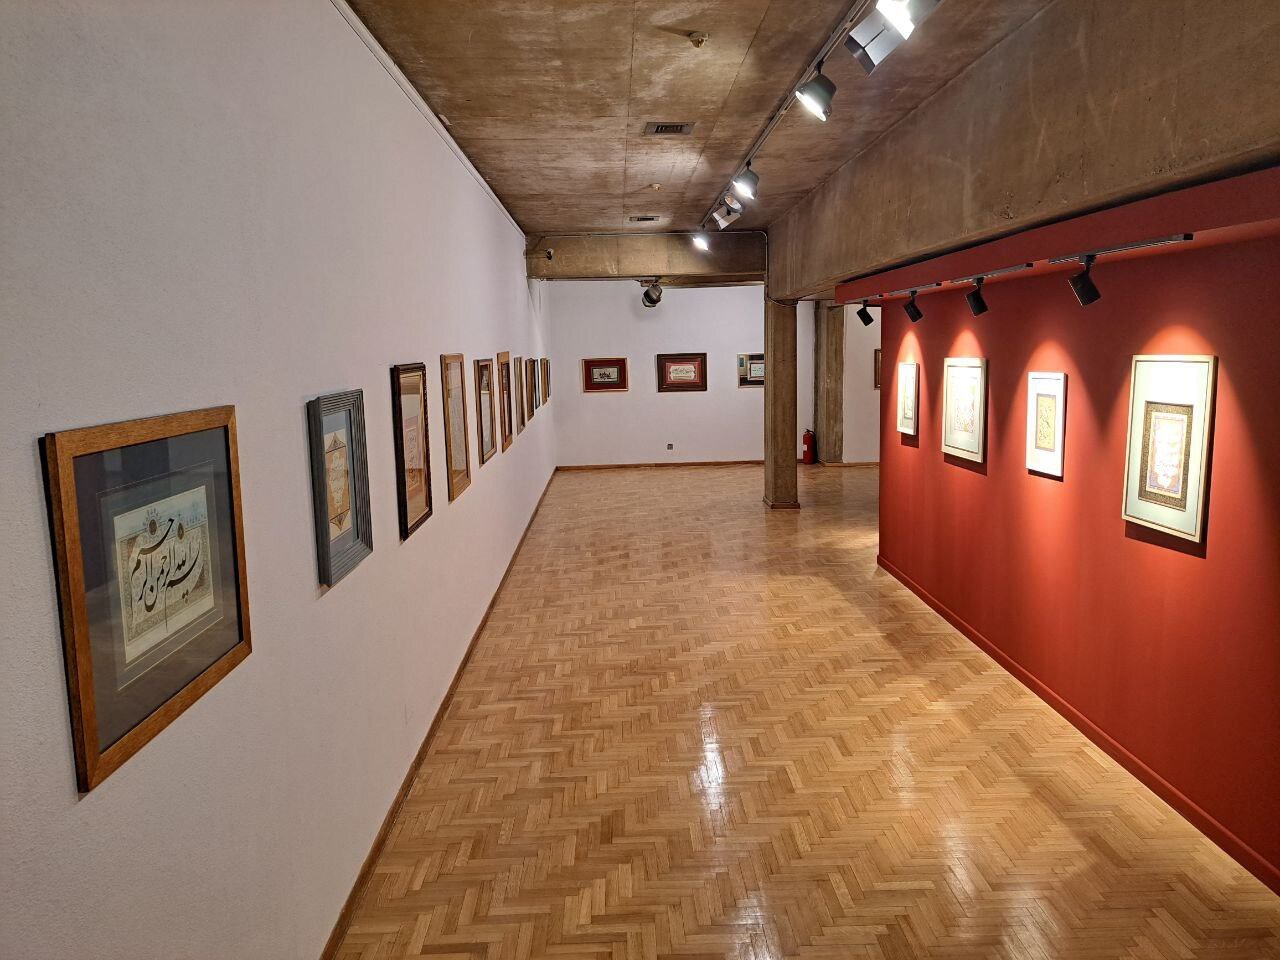 نمایشگاه تخصصی هنرهای قرآنی، «روایت باران» در فرهنگسرای نیاوران گشایش یافت 2